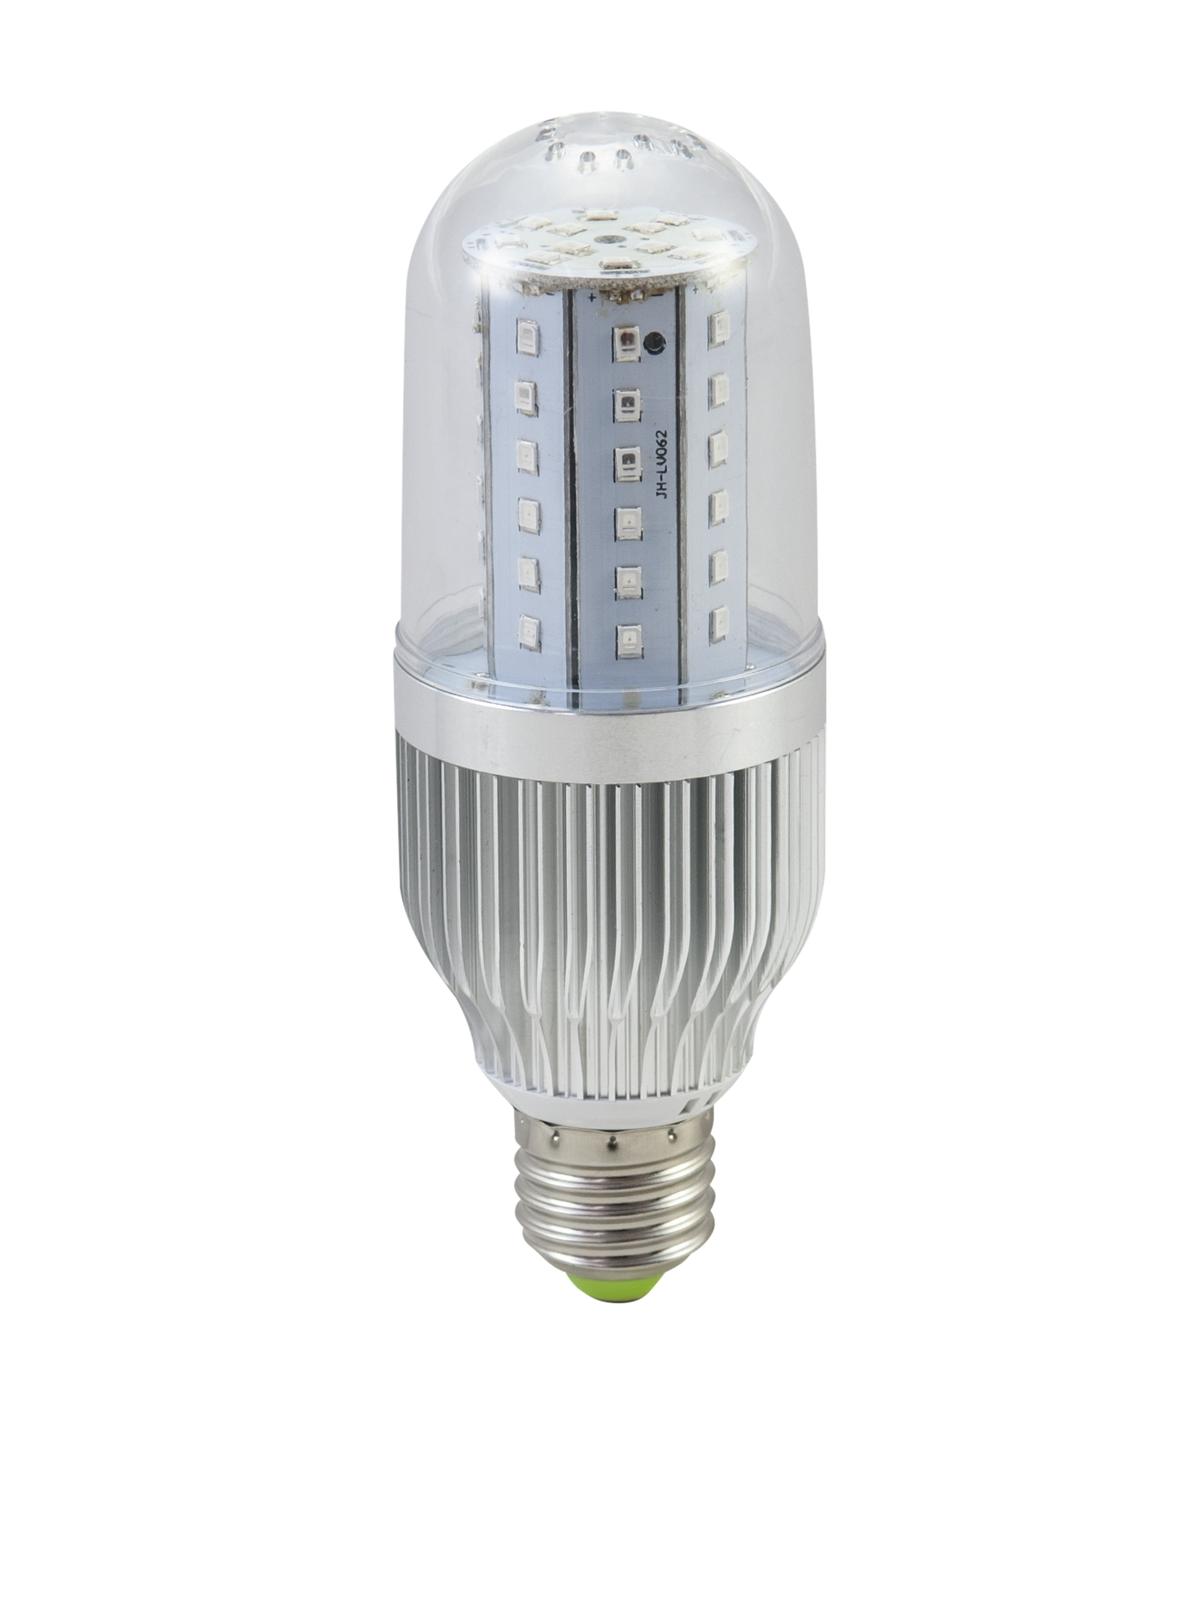 LED E-27 230V 12W SMD LEDs UV - omnilux | Elektronik Lavpris Aps